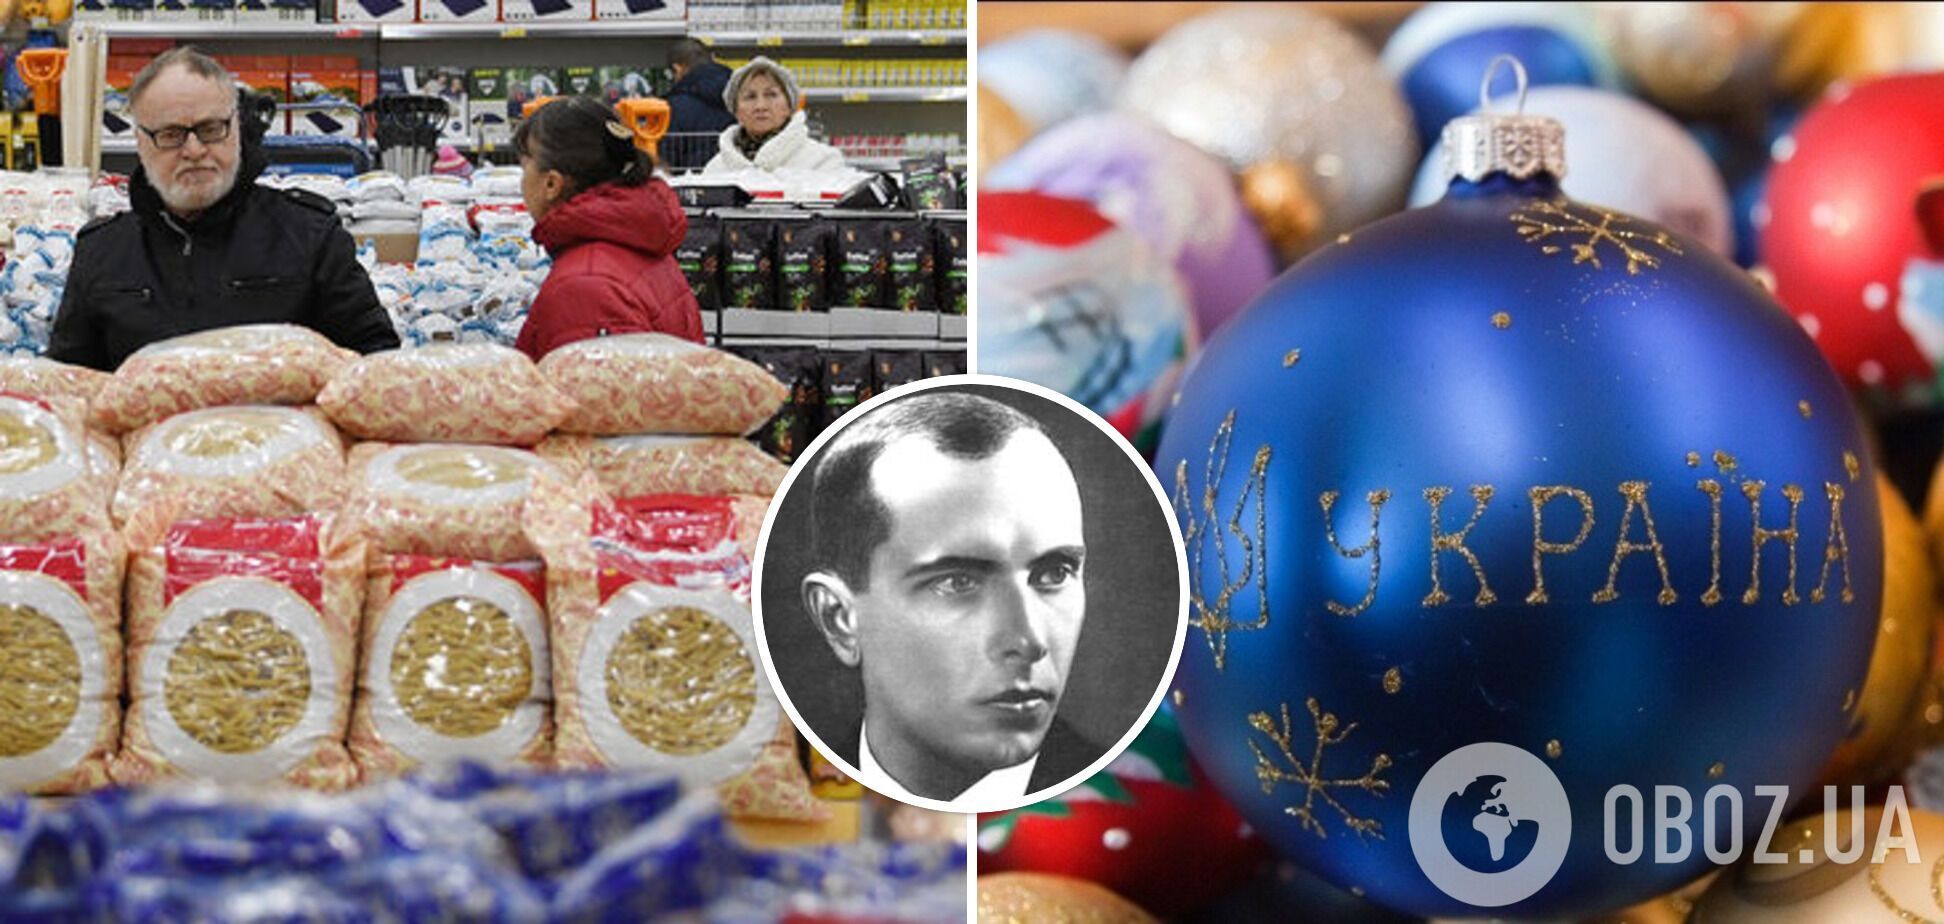 У Петербурзі жінка знайшла у продуктах серветку з віршем про Бандеру: спецслужби РФ проводять перевірку